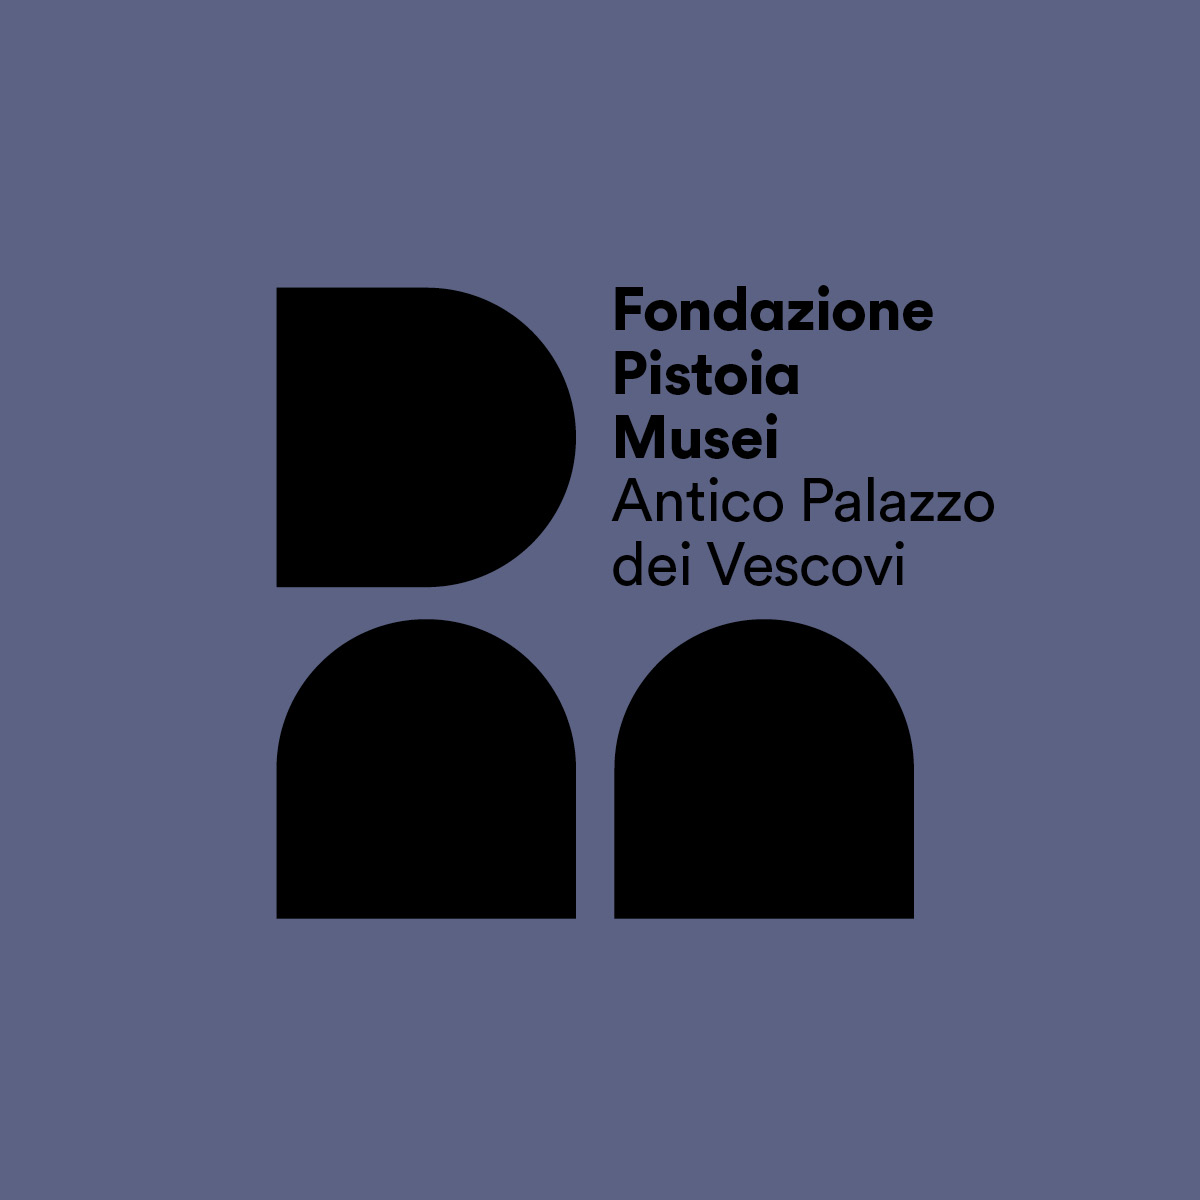 Fondazione-Pistoia-Musei-006 